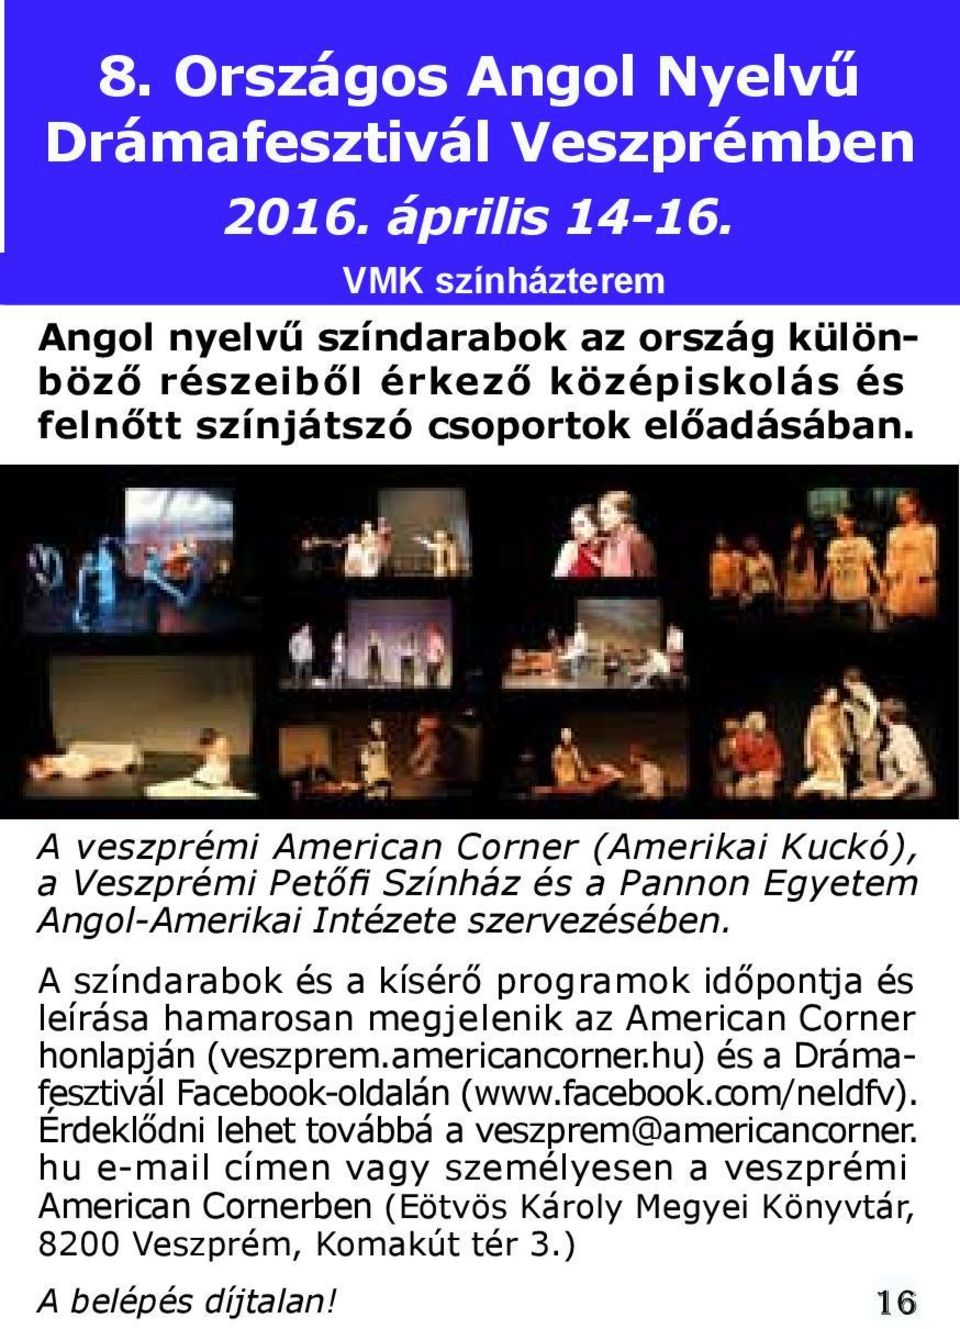 A veszprémi American Corner (Amerikai Kuckó), a Veszprémi Petőfi Színház és a Pannon Egyetem Angol-Amerikai Intézete szervezésében.